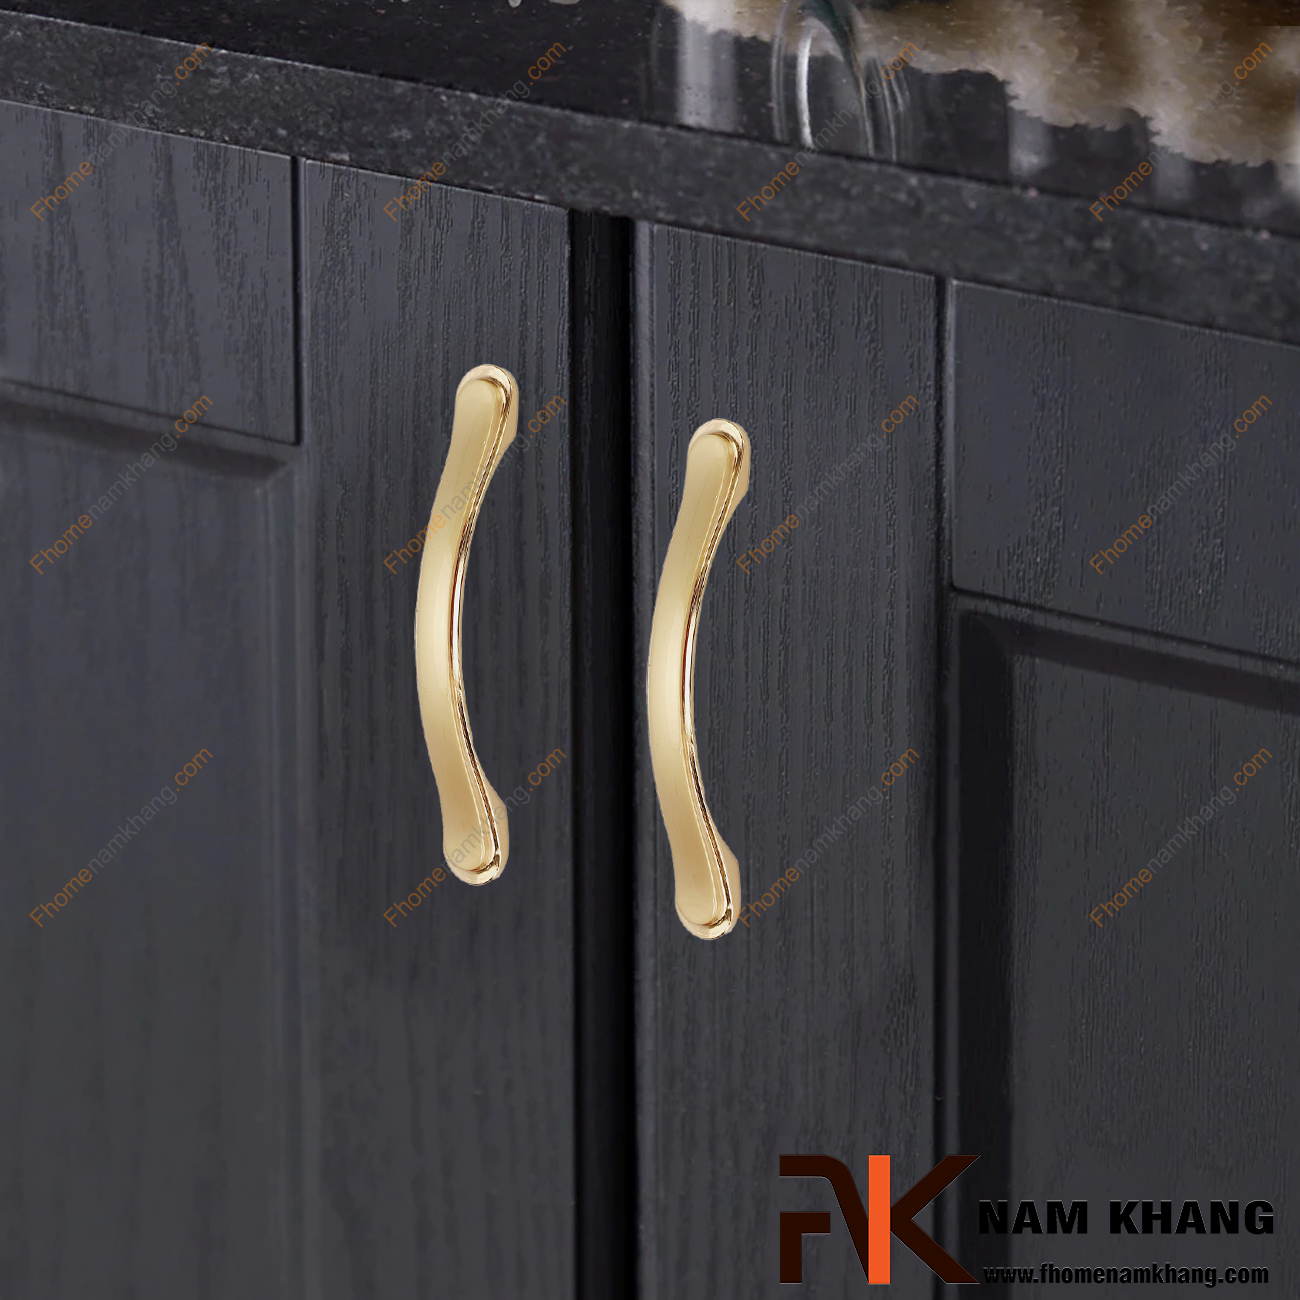 Tay nắm cửa tủ mạ vàng phong cách châu âu NK036-V được thiết kế khá đơn giản nhưng được gia công với độ thẫm mỹ cao. Đây là một sản phẩm sử dụng rất hiệu quả trên nhiều phong cách tủ kệ gỗ và cả kim loại.